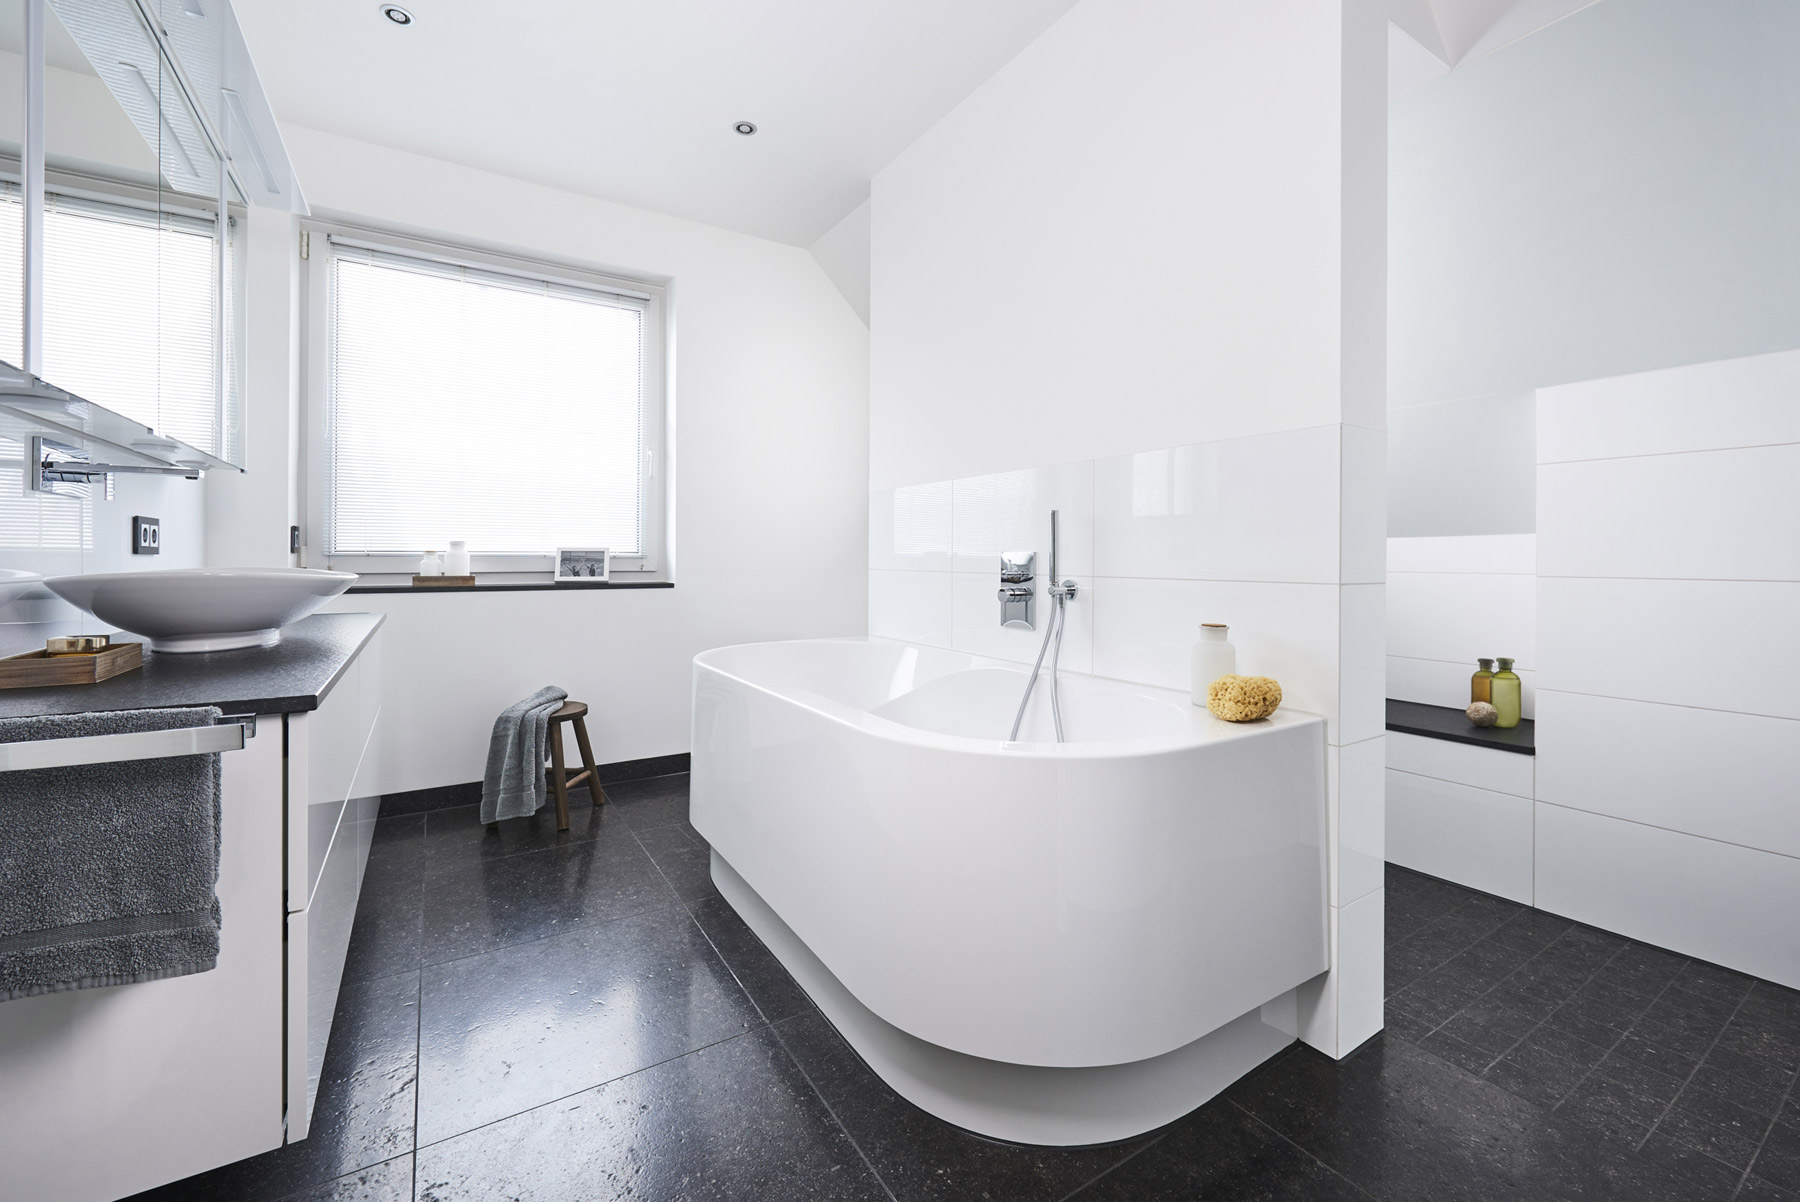 Přesvědčivá přeměna: Oddělující předstěna architektonicky stylově rozděluje místnost a slouží na jedné straně k instalaci vany, na druhé straně sprchy a v zadní oblasti WC. (Foto: Viega)